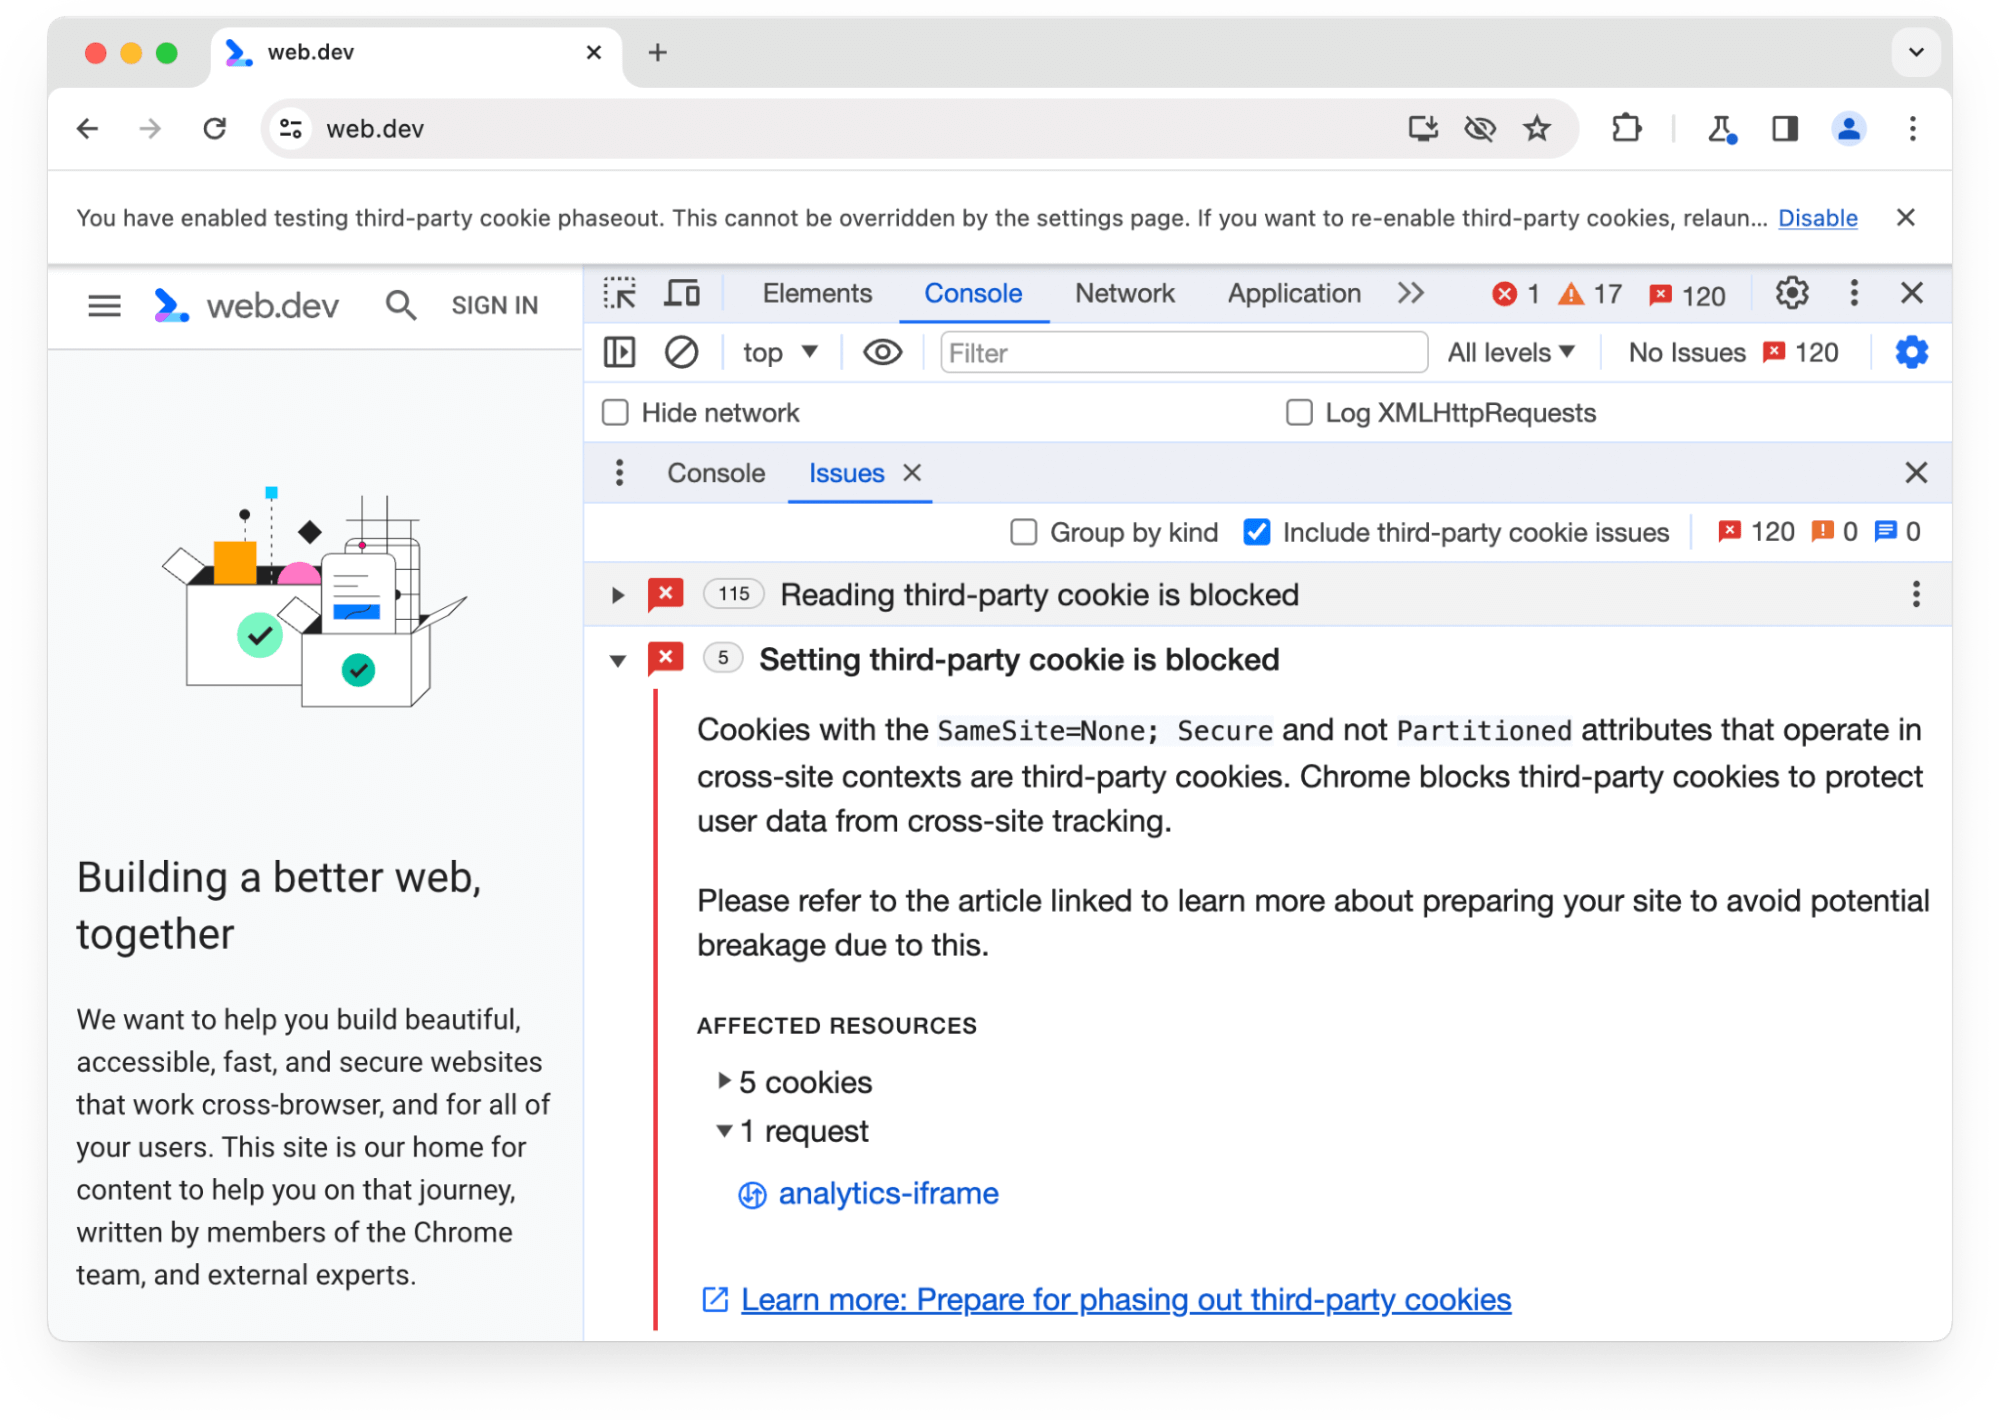 Aviso do painel &quot;Problemas&quot; do Chrome DevTools sobre cinco cookies de terceiros que foram bloqueados em 1 solicitação.